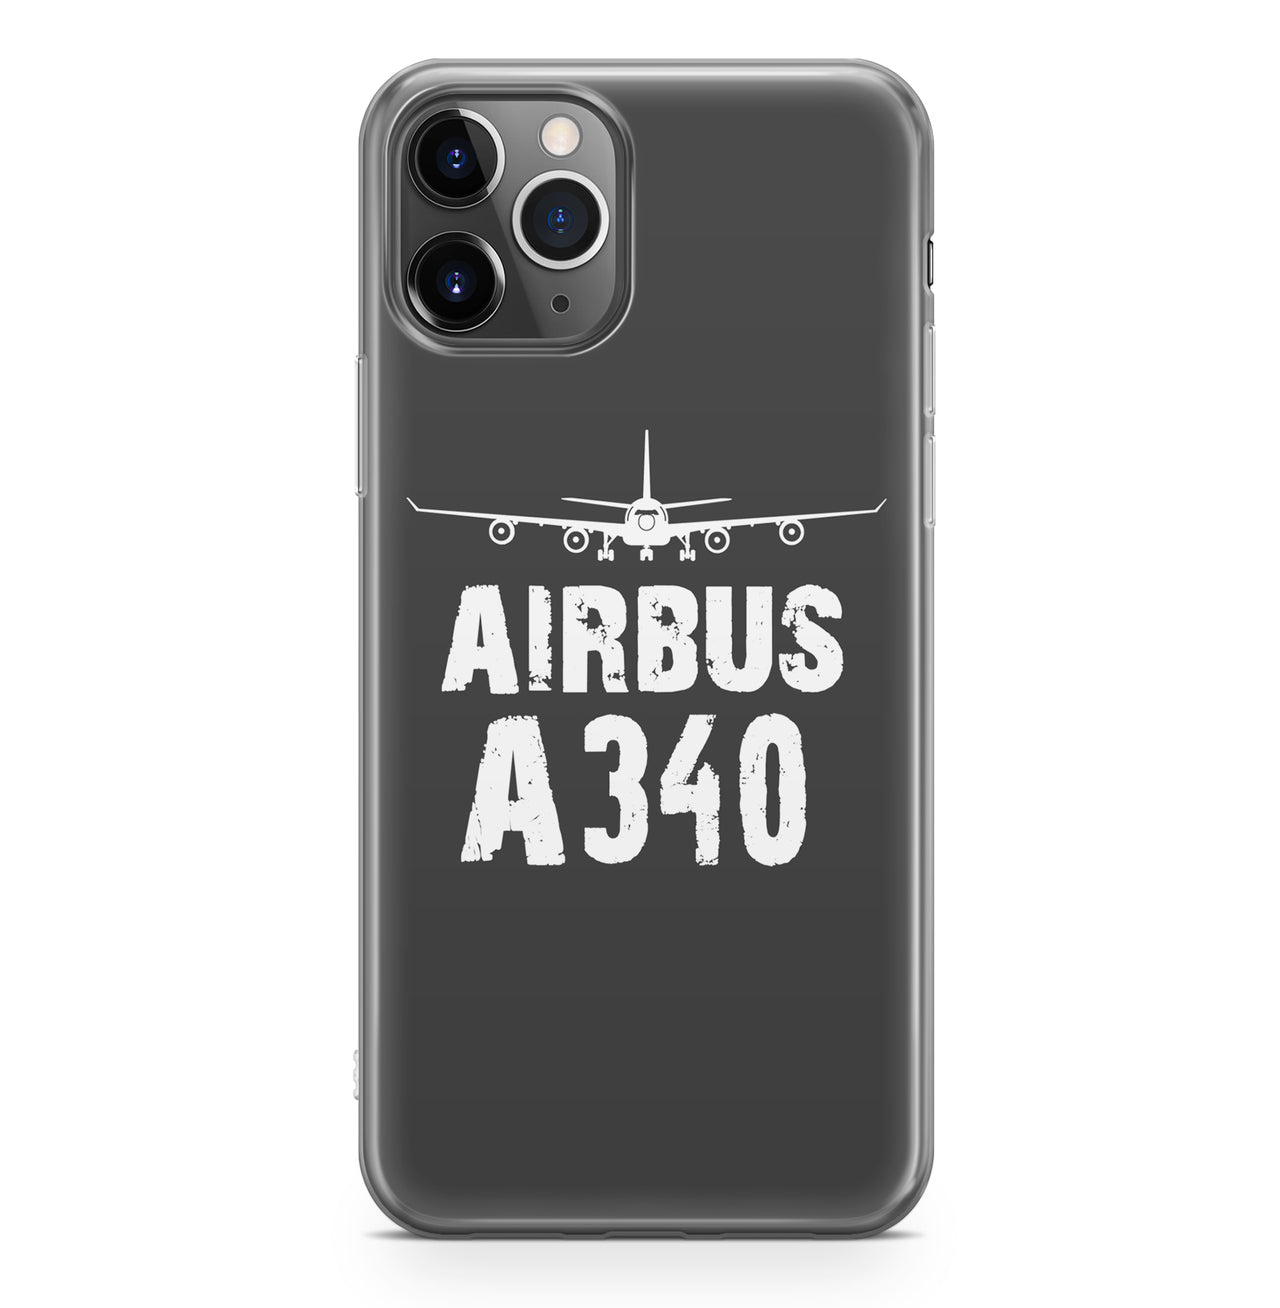 Airbus A340 & Plane Designed iPhone Cases